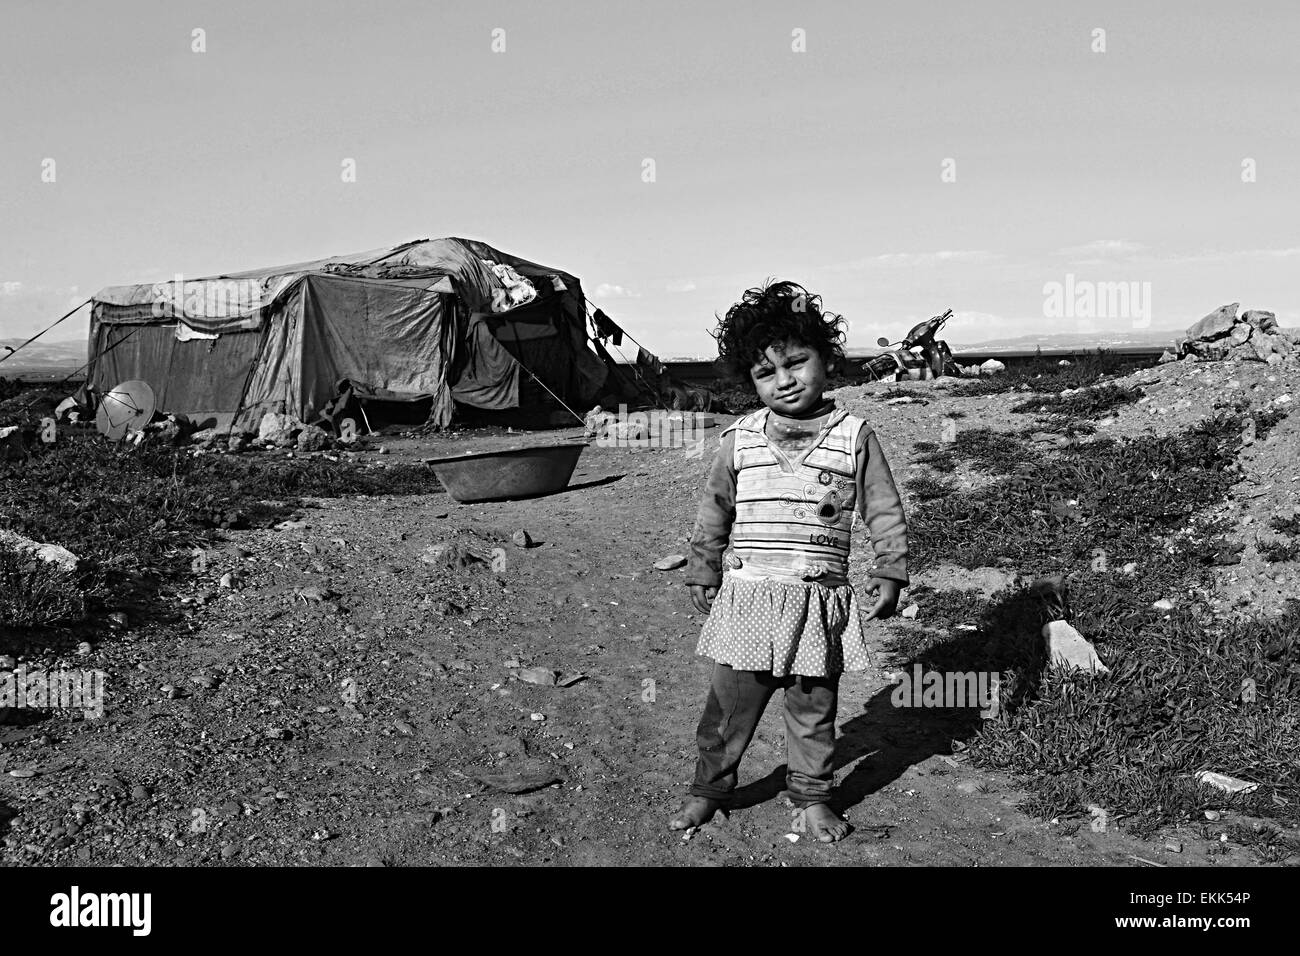 Portrait de réfugiés sans abri vivant en Turquie. 1.4.2015 Reyhanli, Turquie Banque D'Images